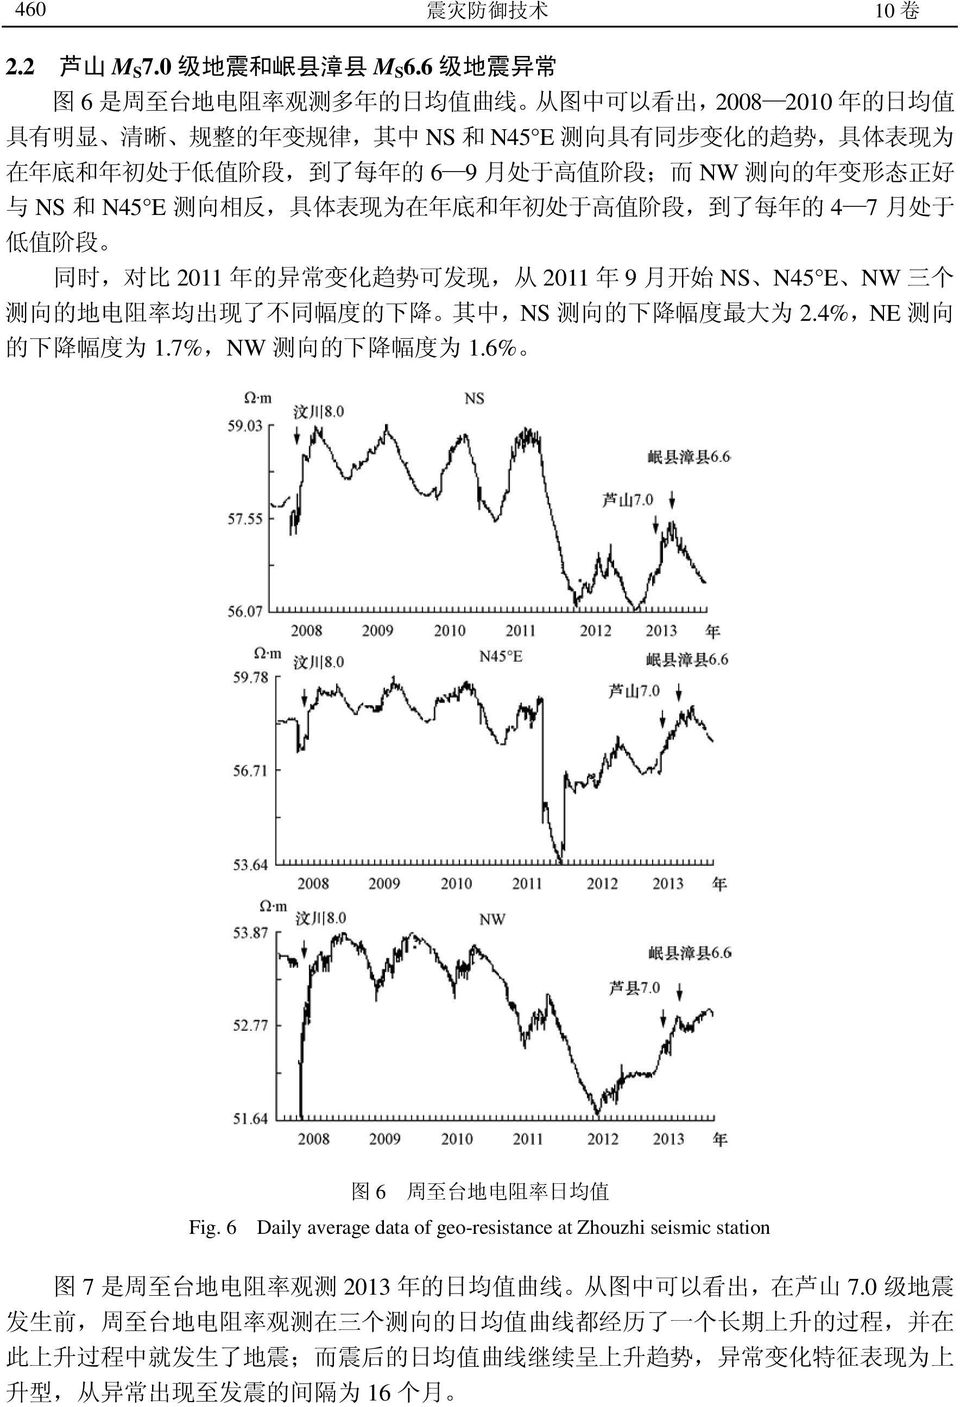 月 处 于 高 值 阶 段 ; 而 NW 测 向 的 年 变 形 态 正 好 与 NS 和 N45 E 测 向 相 反, 具 体 表 现 为 在 年 底 和 年 初 处 于 高 值 阶 段, 到 了 每 年 的 4 7 月 处 于 低 值 阶 段 同 时, 对 比 2011 年 的 异 常 变 化 趋 势 可 发 现, 从 2011 年 9 月 开 始 NS N45 E NW 三 个 测 向 的